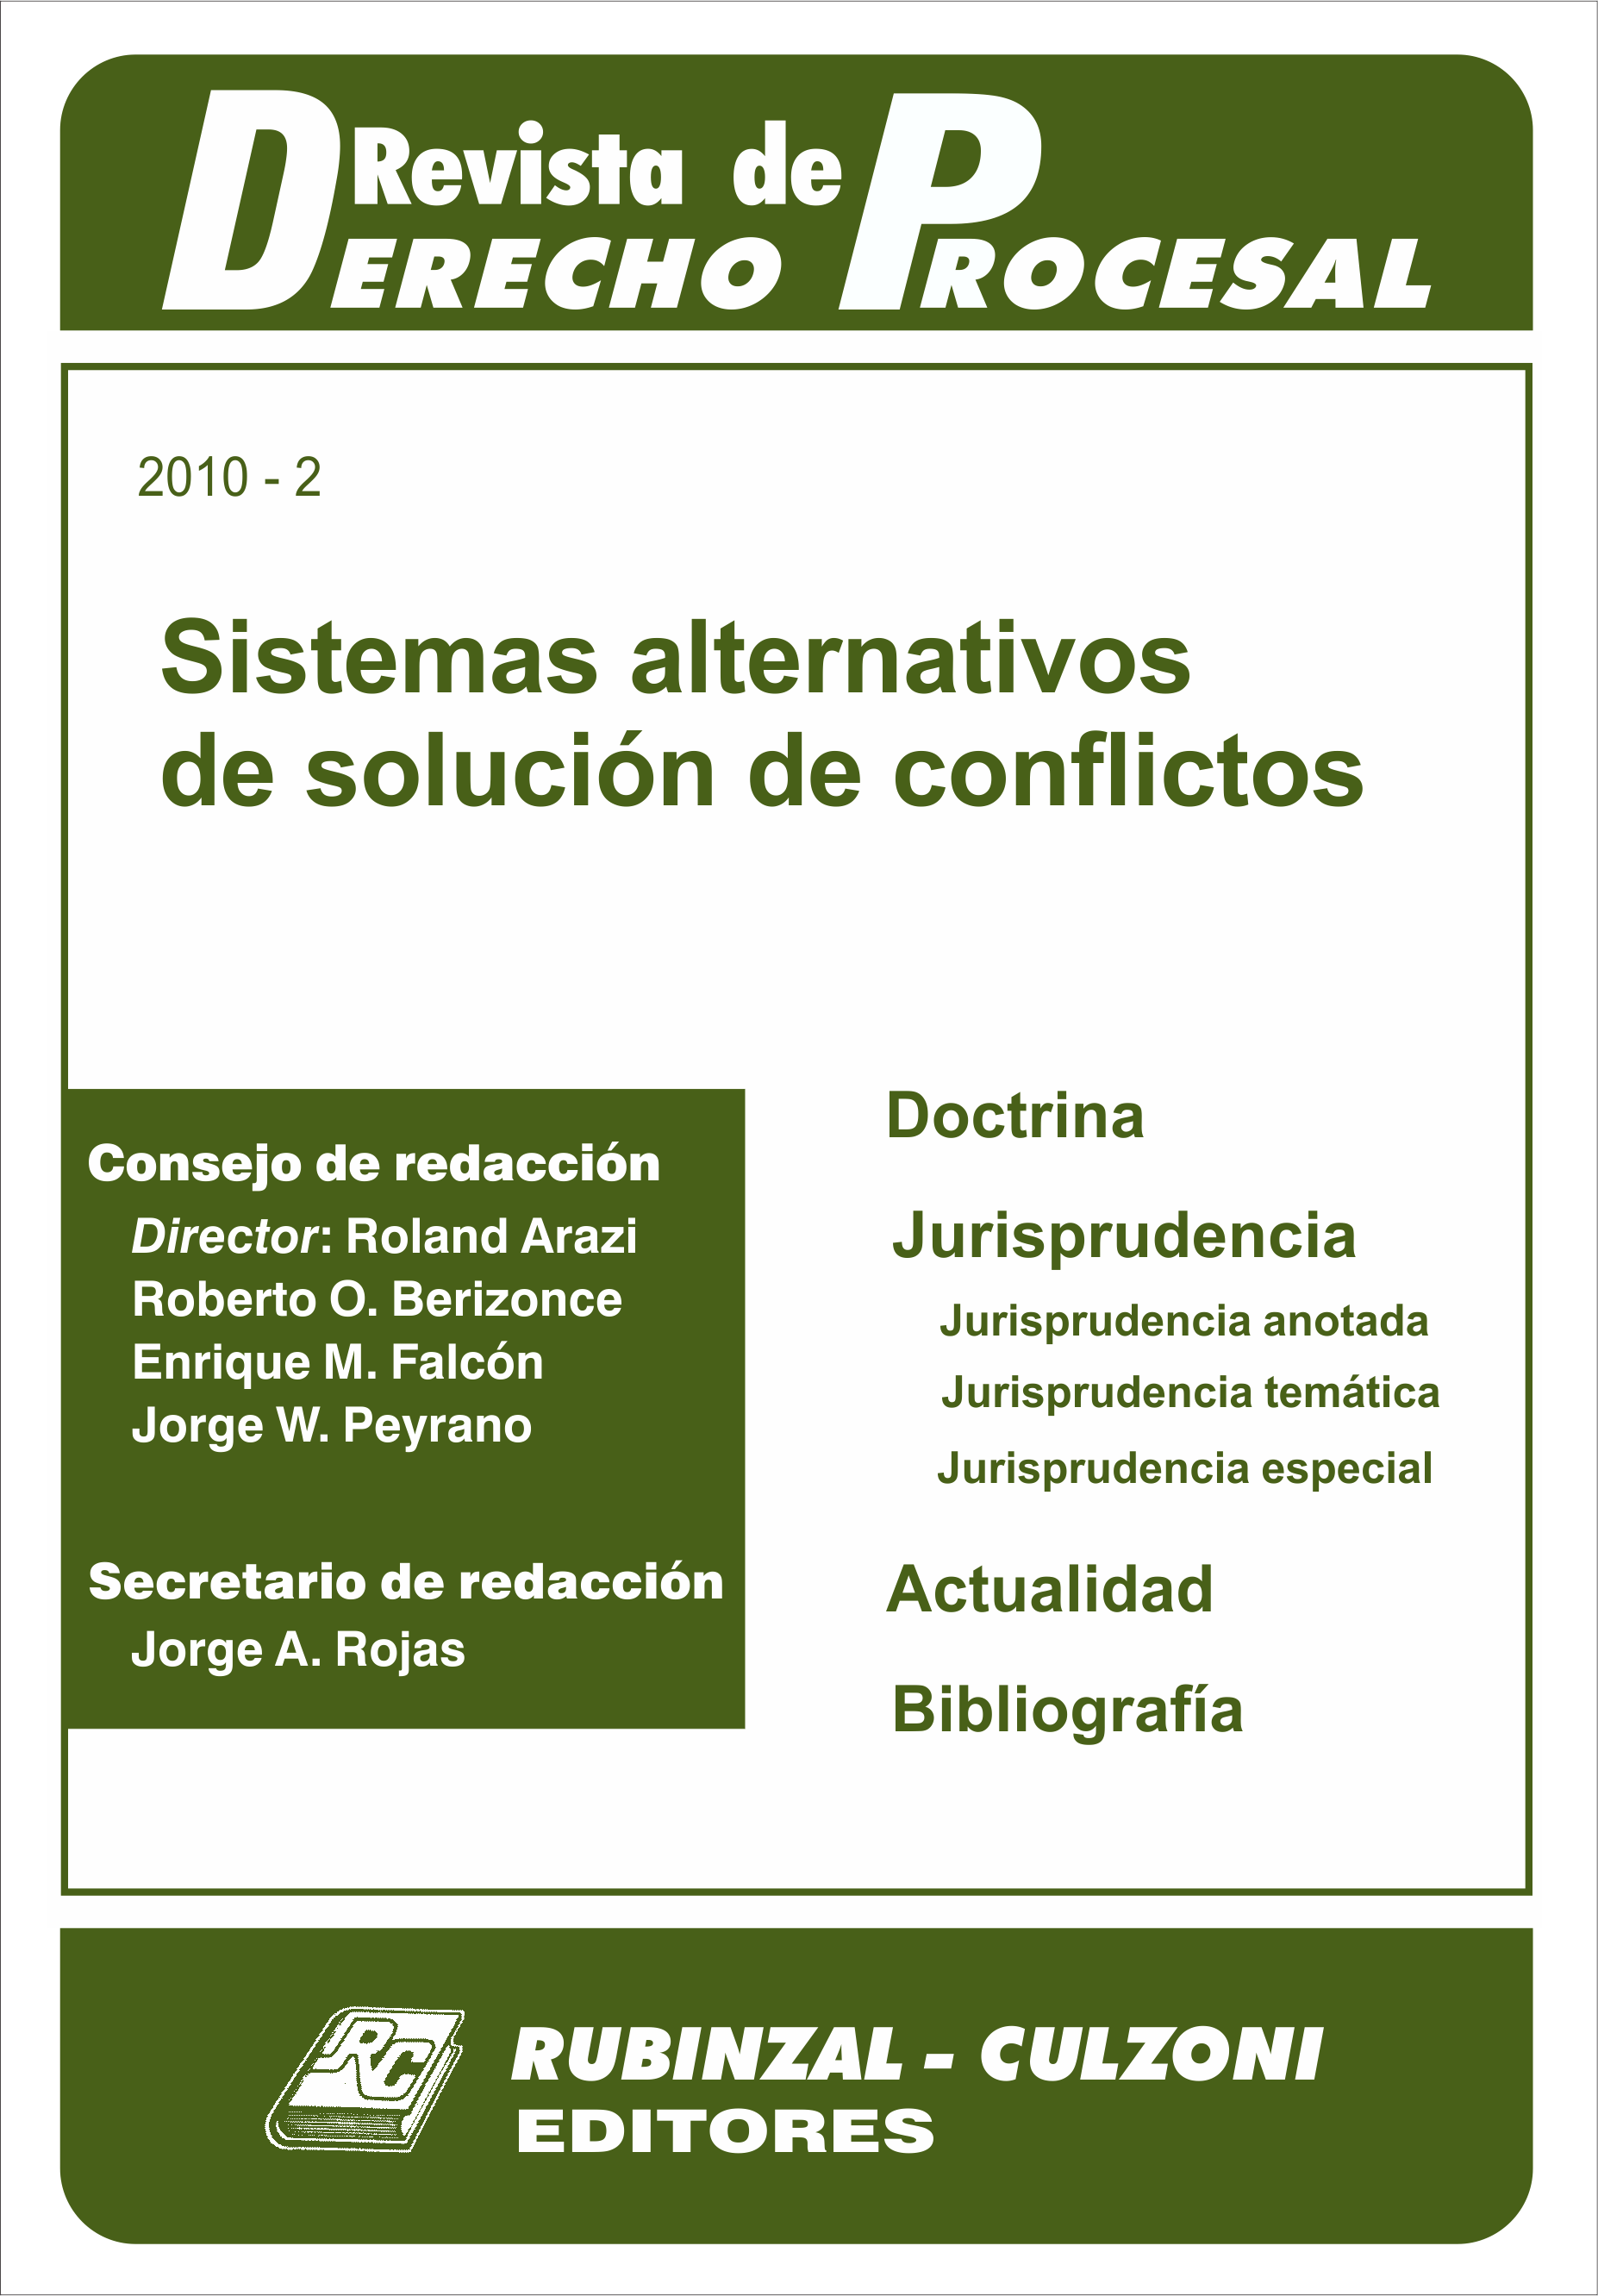 Revista de Derecho Procesal - Sistemas alternativos de solución de conflictos